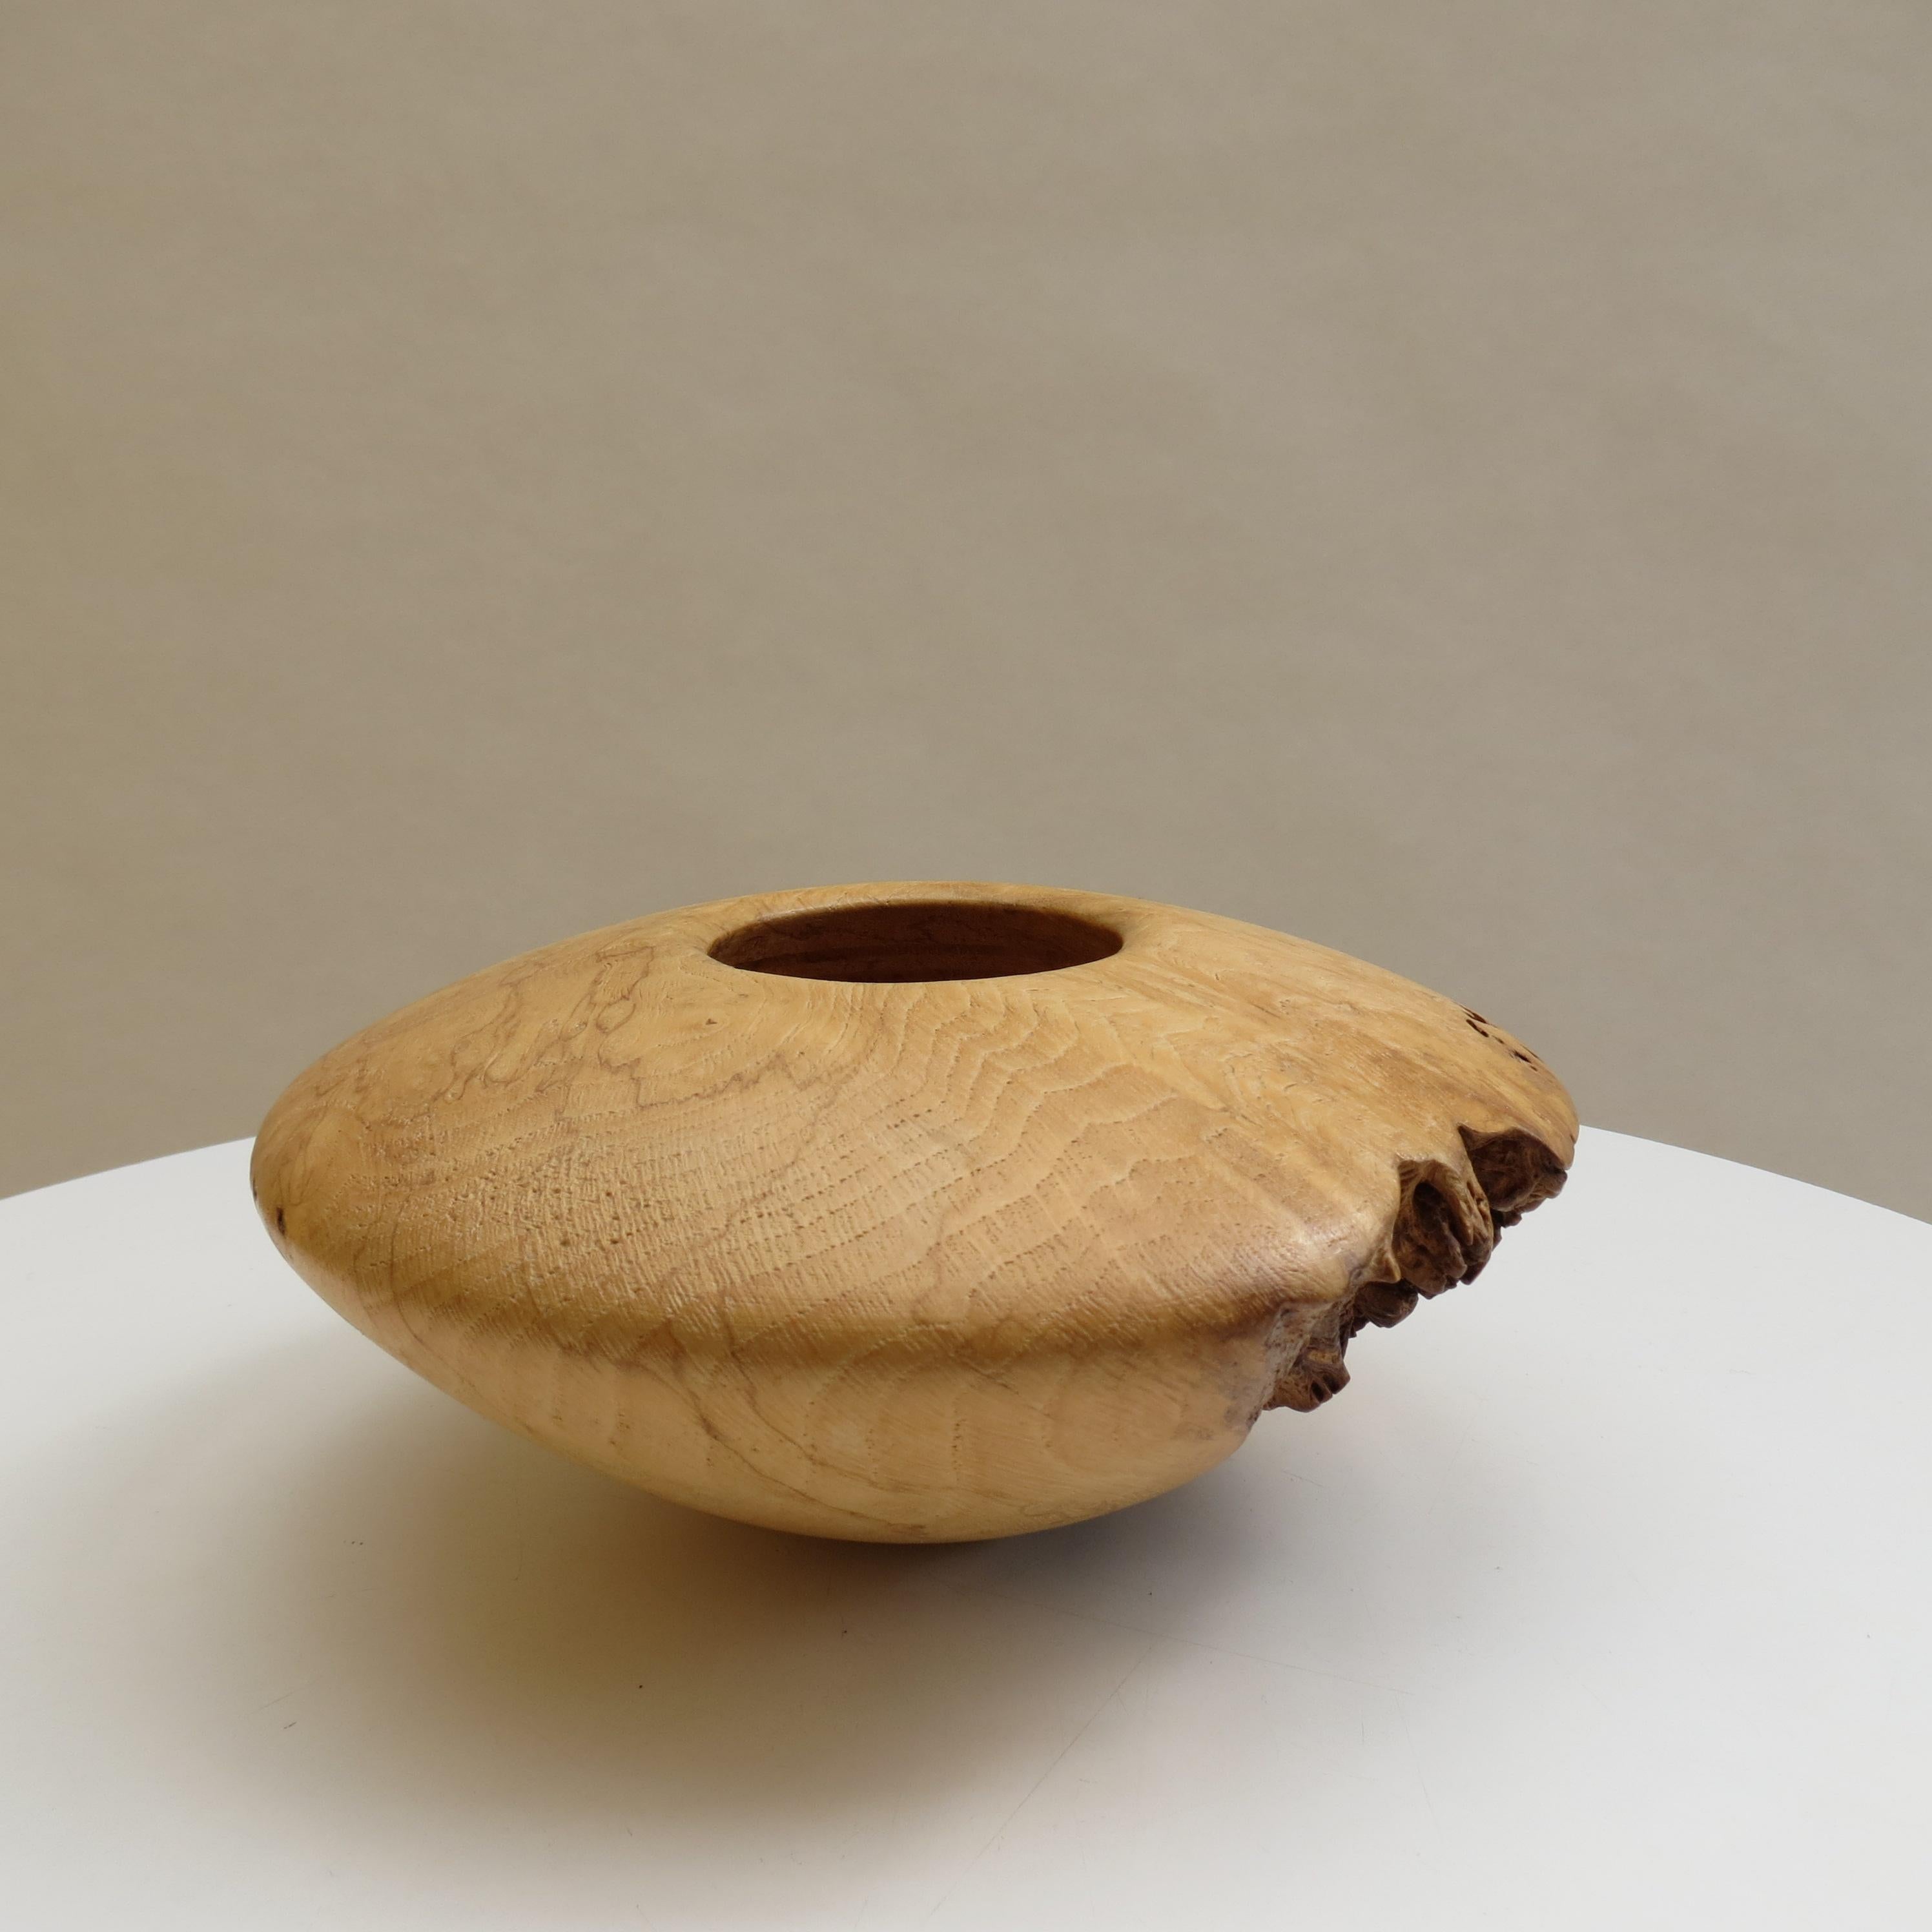 Un très élégant pot ou bol sculptural vintage en bois, fabriqué à partir de loupe de chêne, avec quelques zones contrastées de loupe naturelle. Merveilleuse forme avec petite ouverture circulaire au sommet, anneaux tournés à la main à l'intérieur du